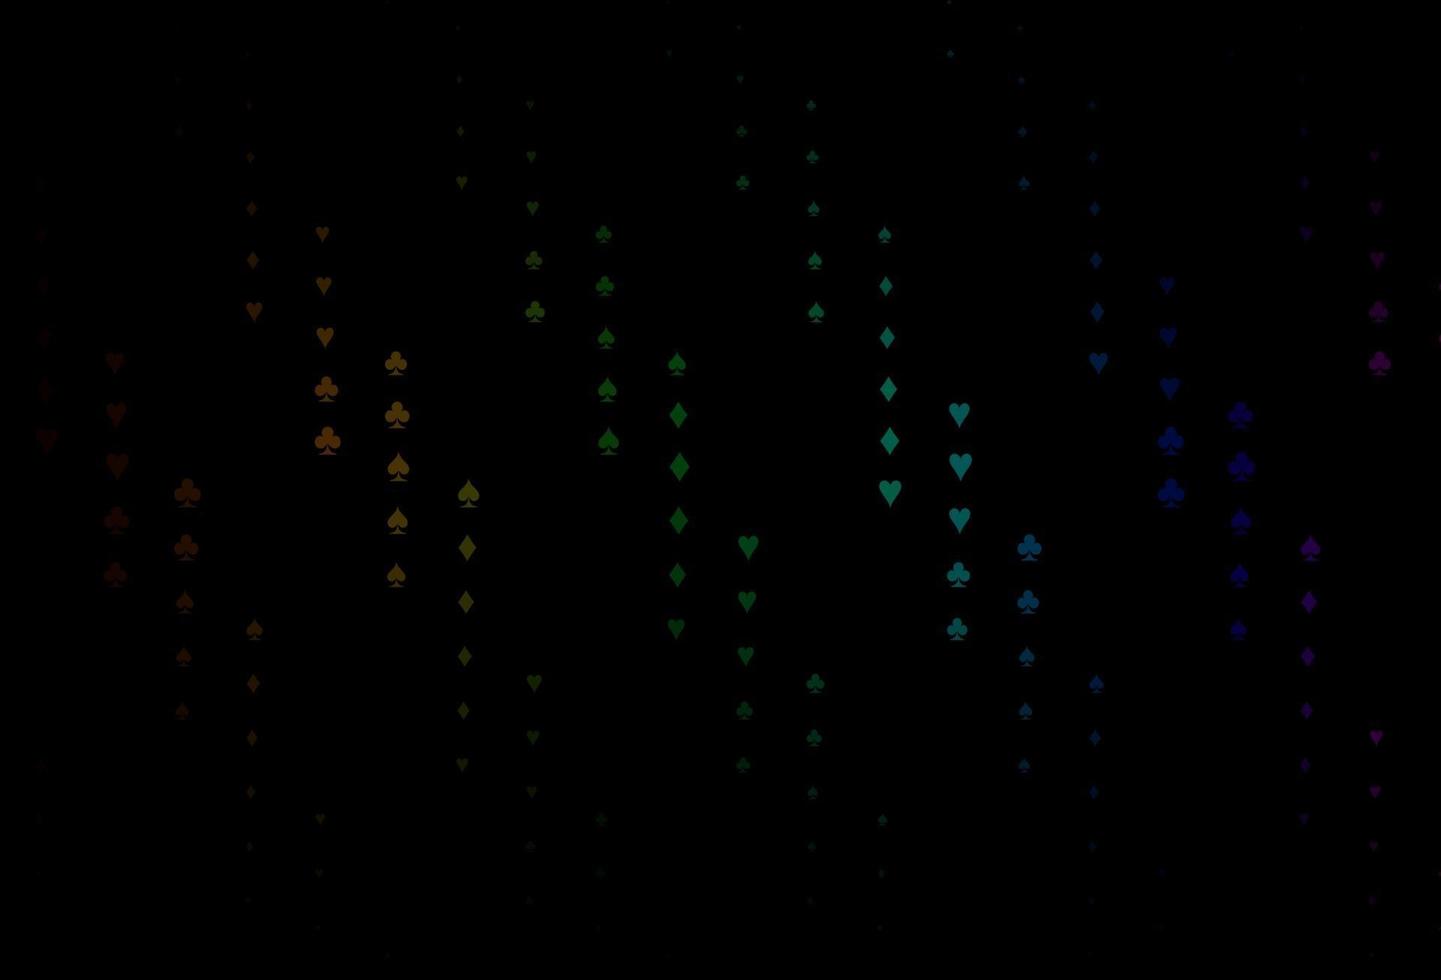 multicolore scuro, modello vettoriale arcobaleno con simboli di poker.